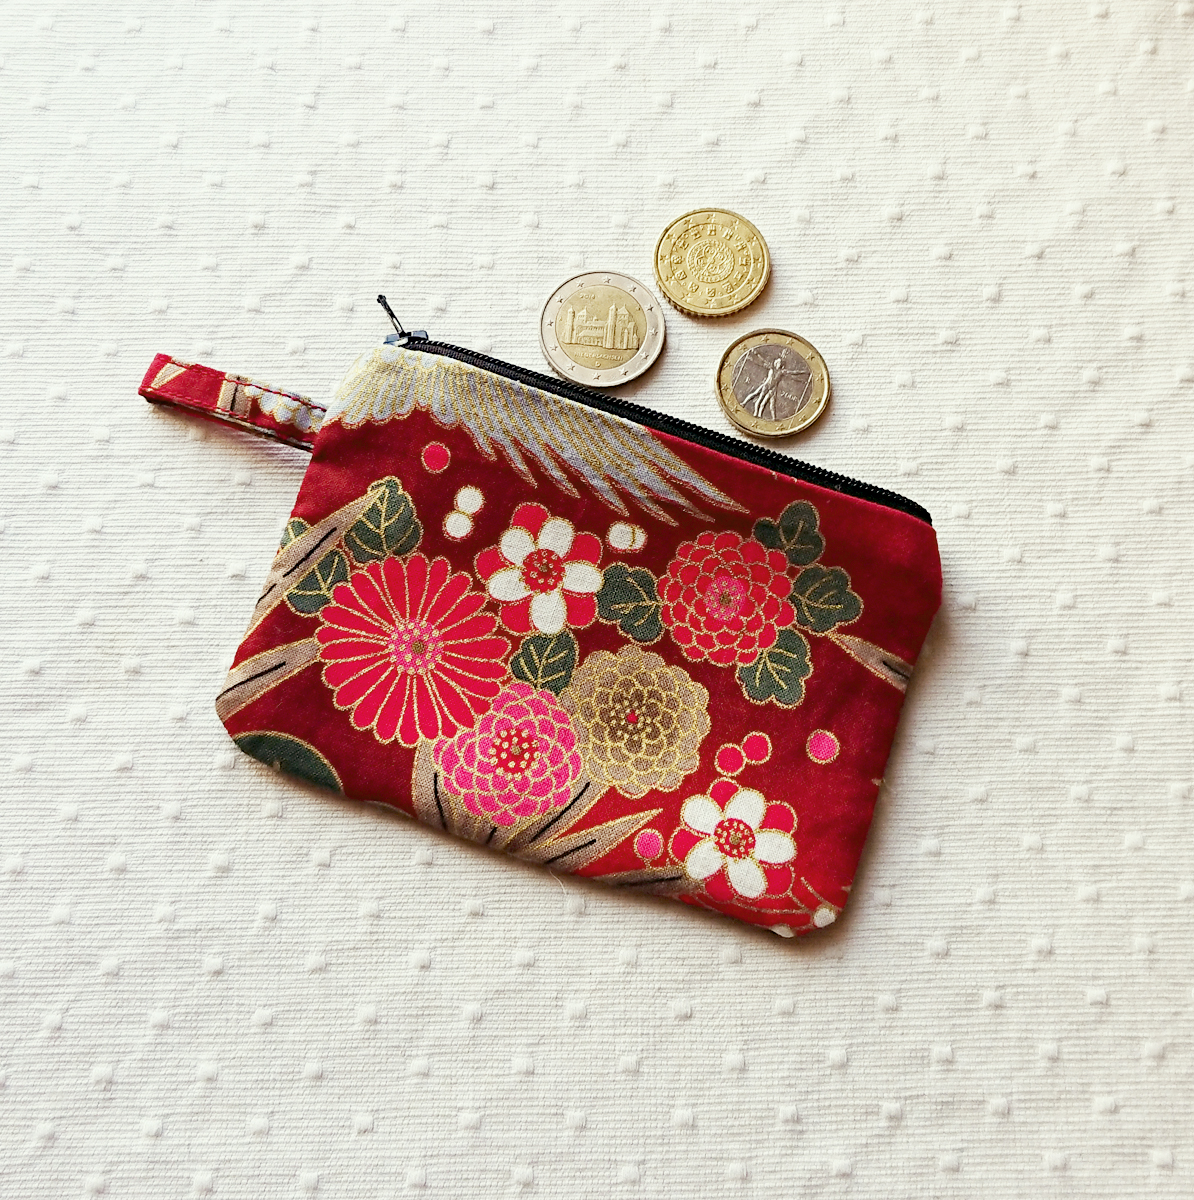 V1 - Petit Porte-monnaie tissu japonais coton imprimé floral Rouge / Vert  et Or 12 x 8,5 cm, fermeture à glissière - Ann M. Creation Bijoux et objets  textile